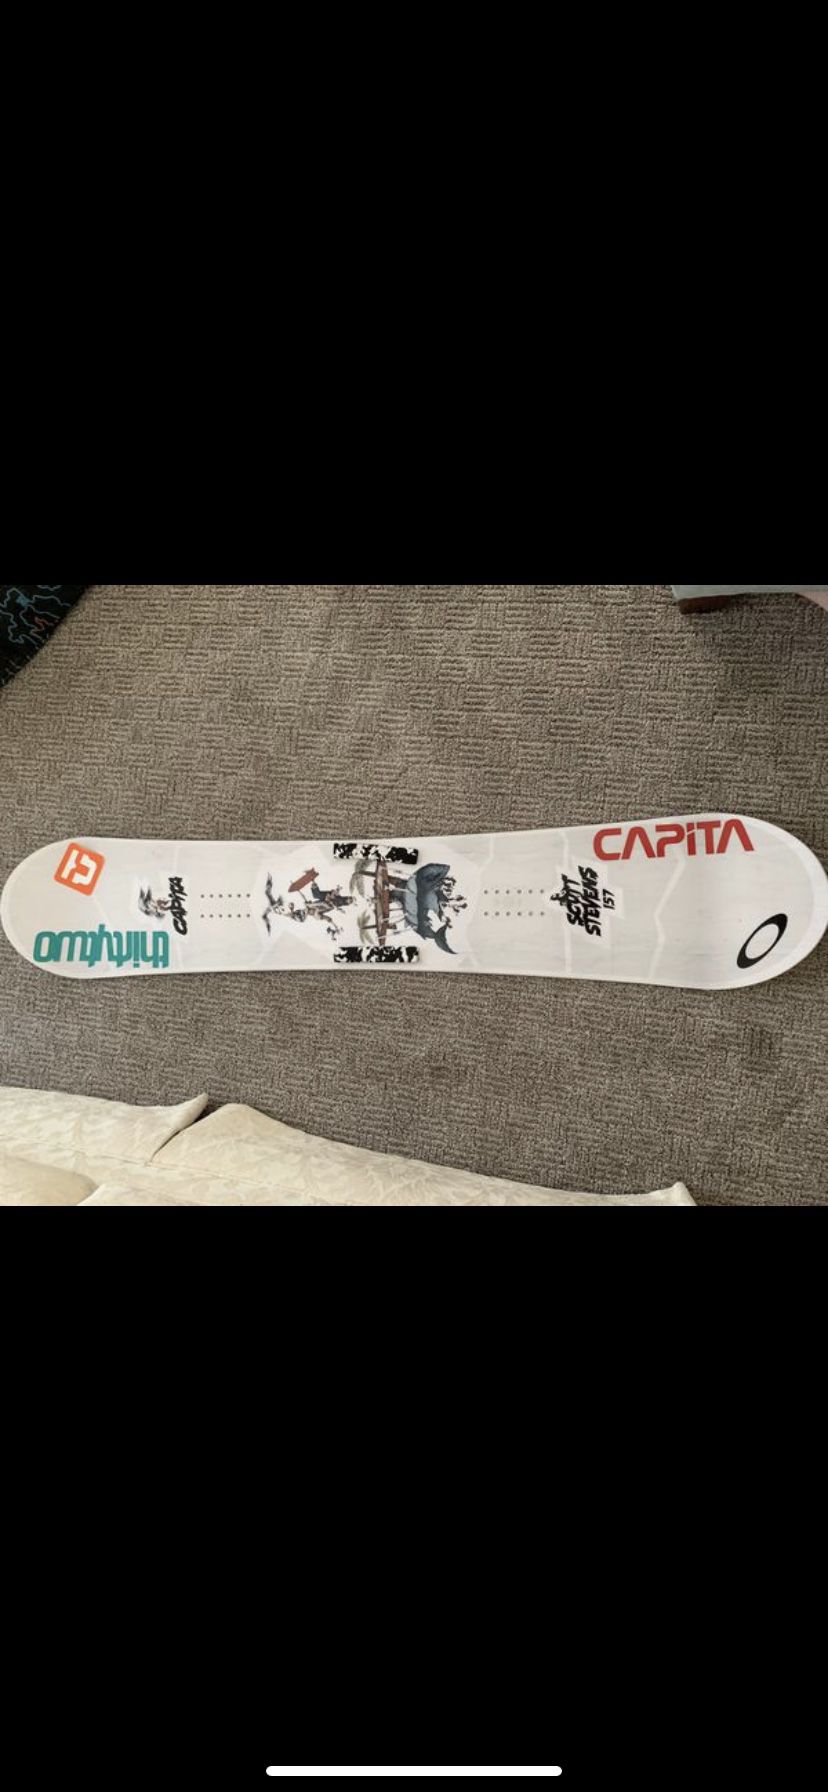 Capita Scott Stevens 2018 snowboard